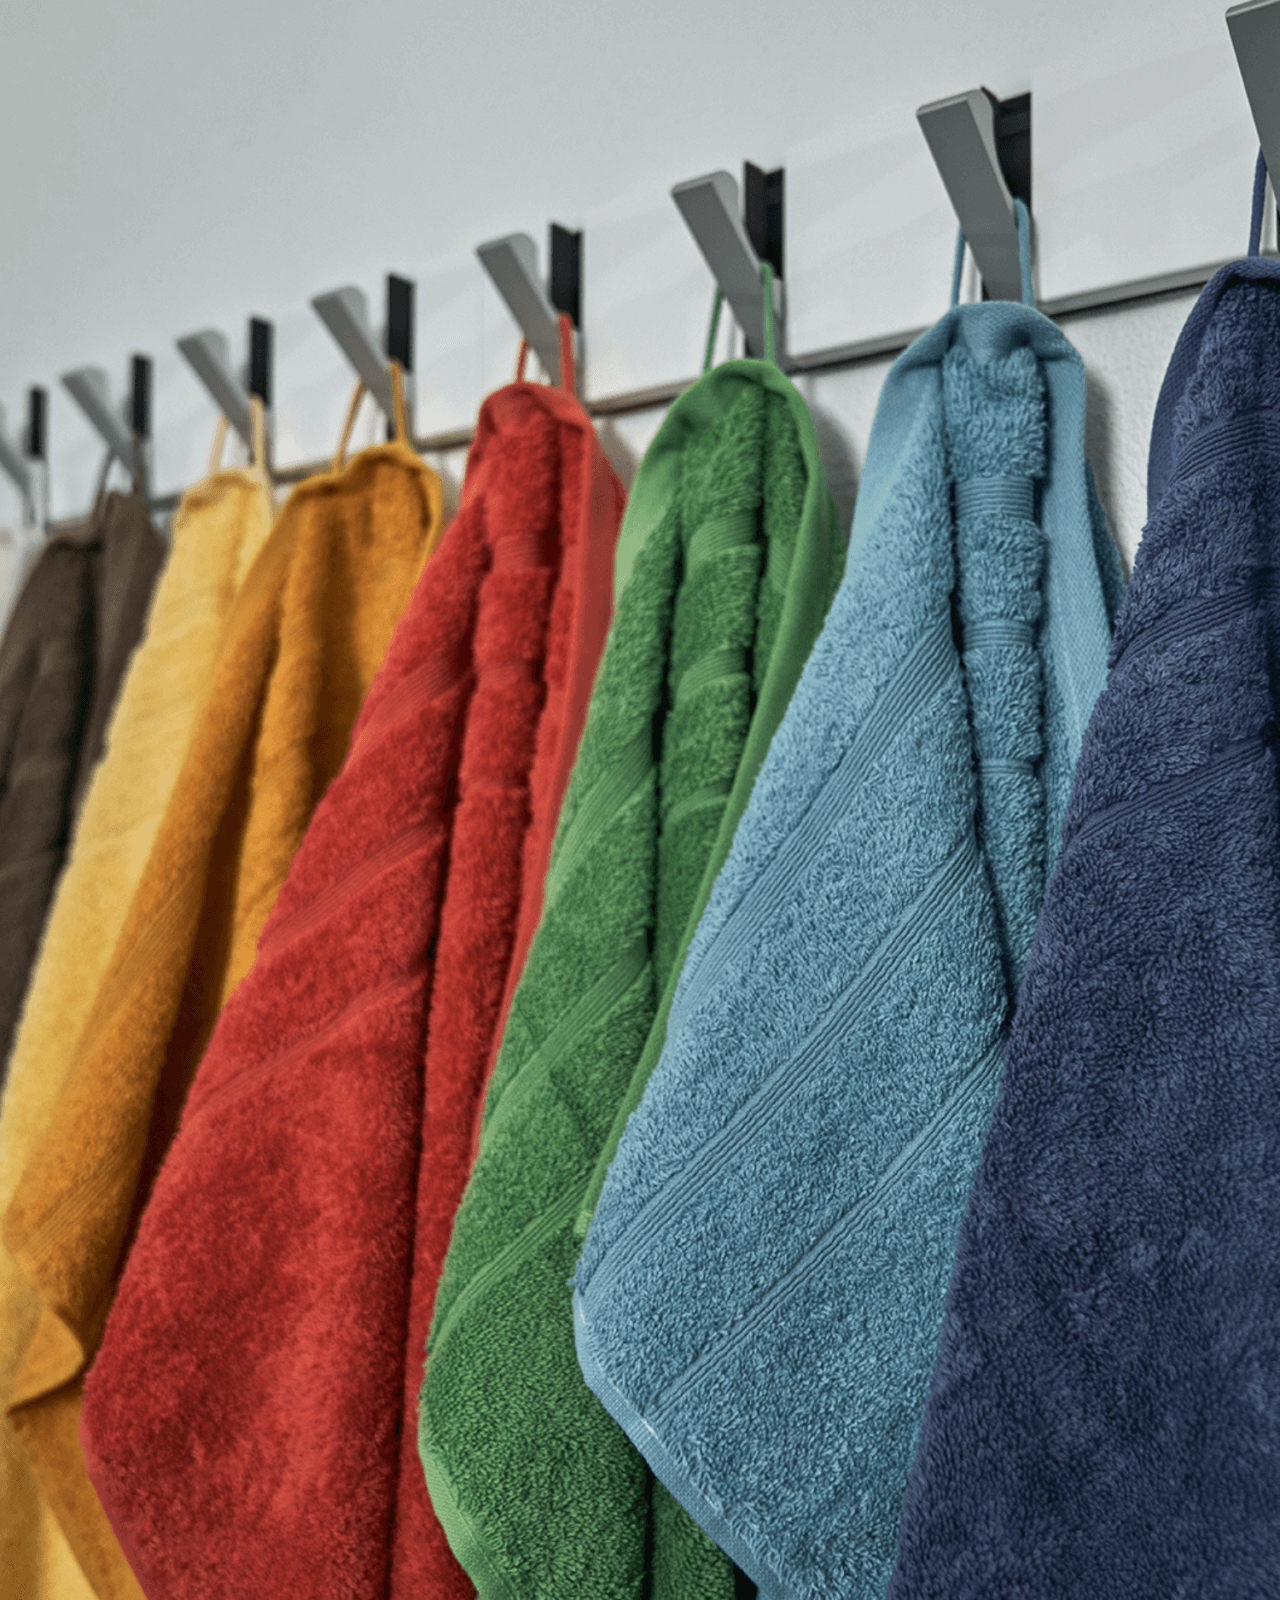 Farverige håndklæder hængende på en knage